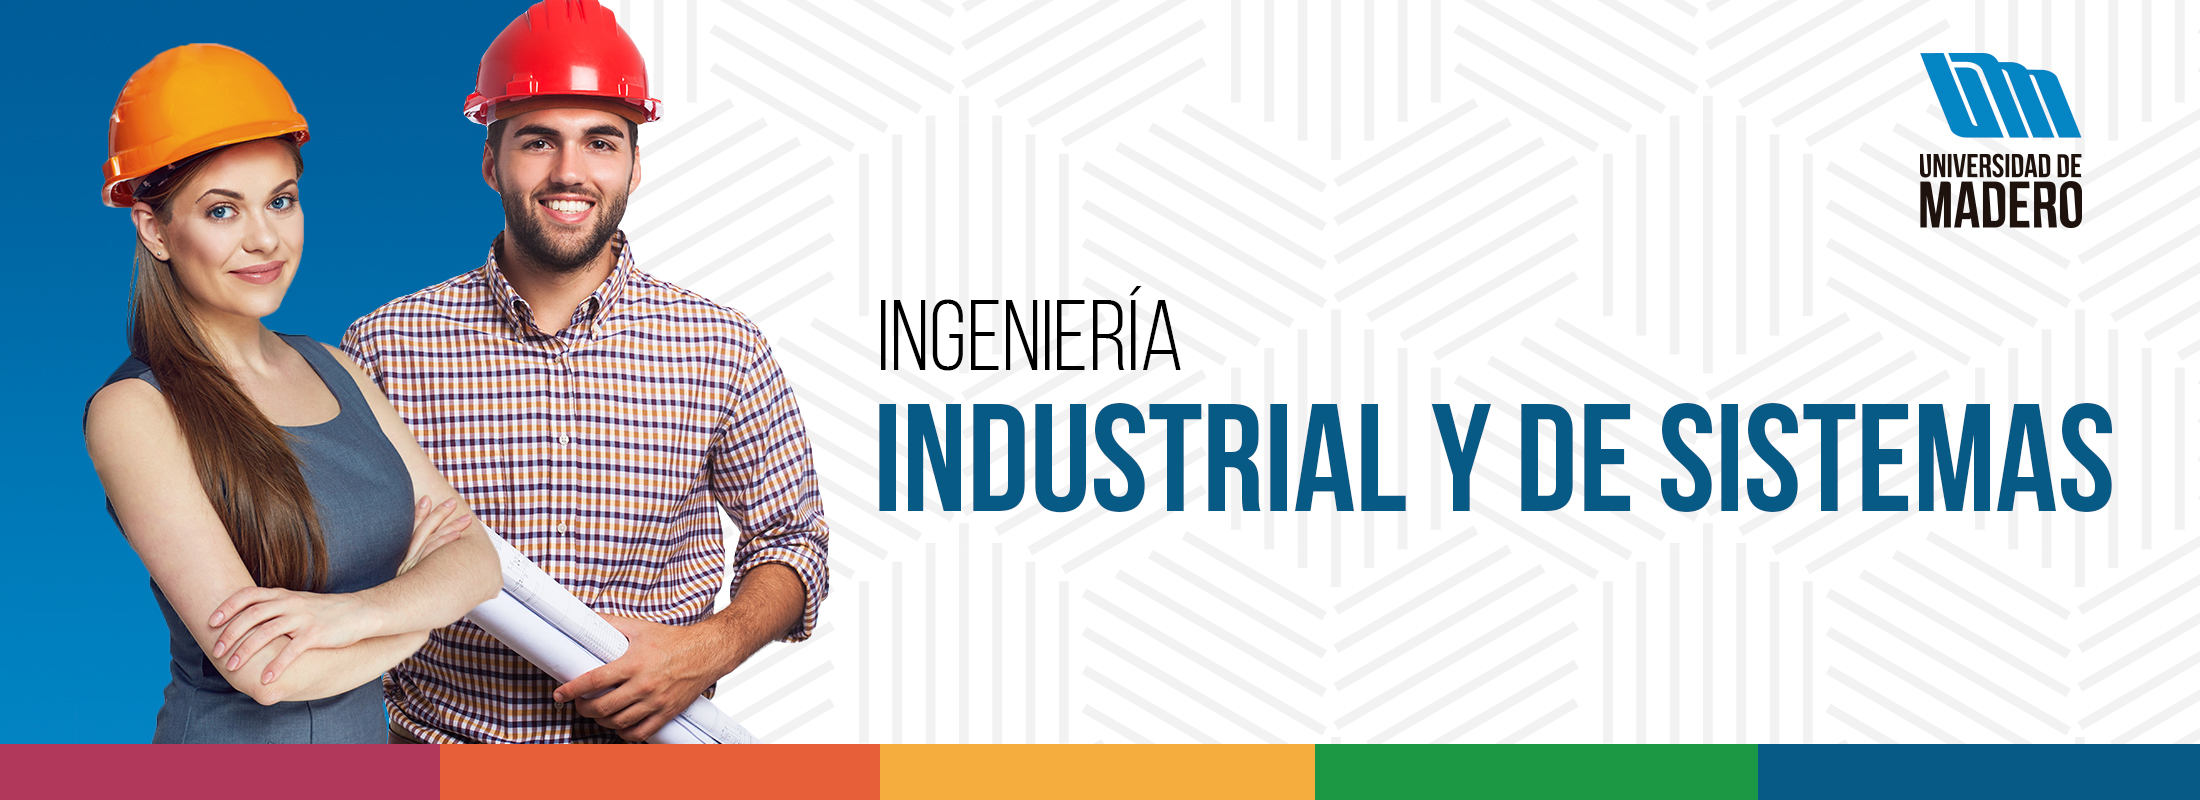 Ingenieria Industrial Y De Sistemas Universidad De Madero